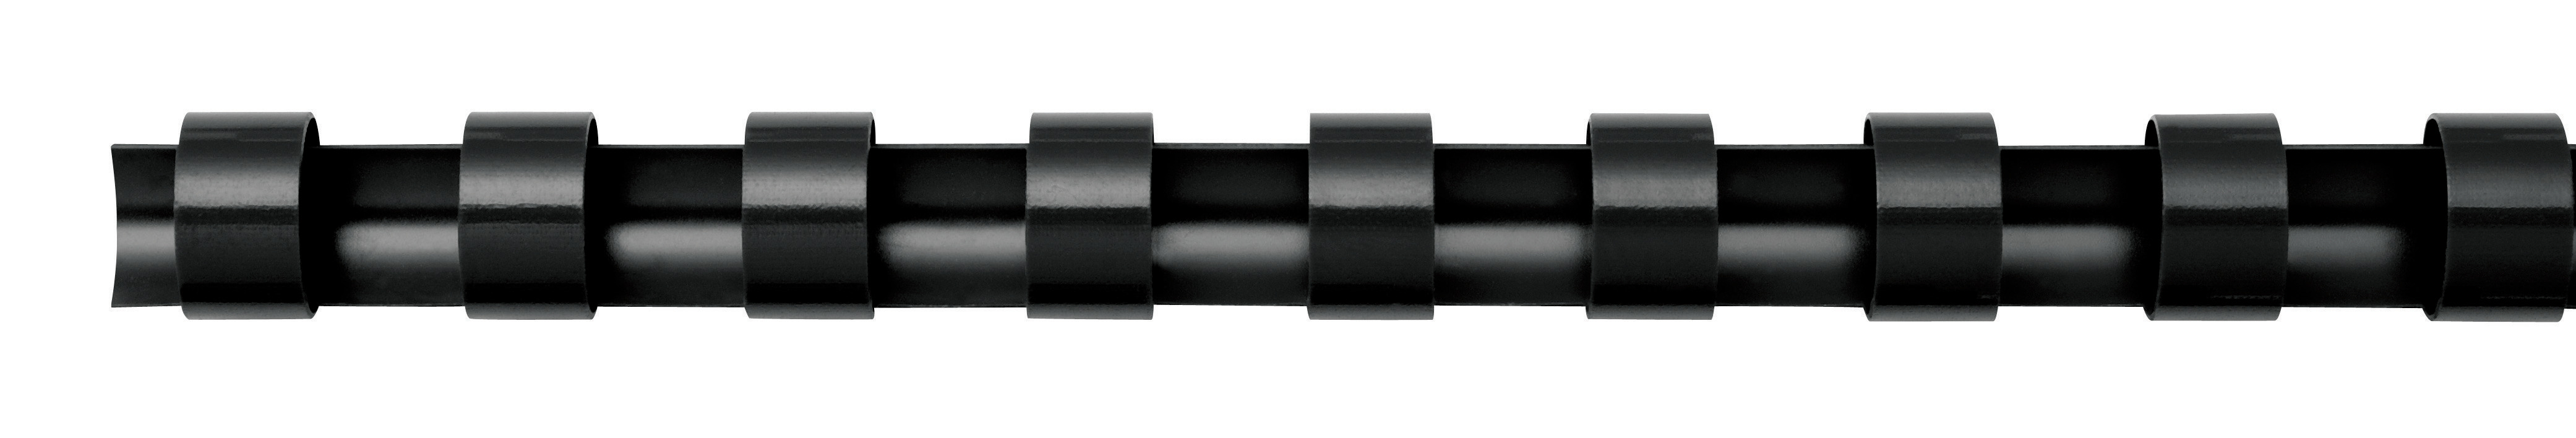 FELLOWES Plastikbinderücken 8 mm 5330702 schwarz 25 Stück